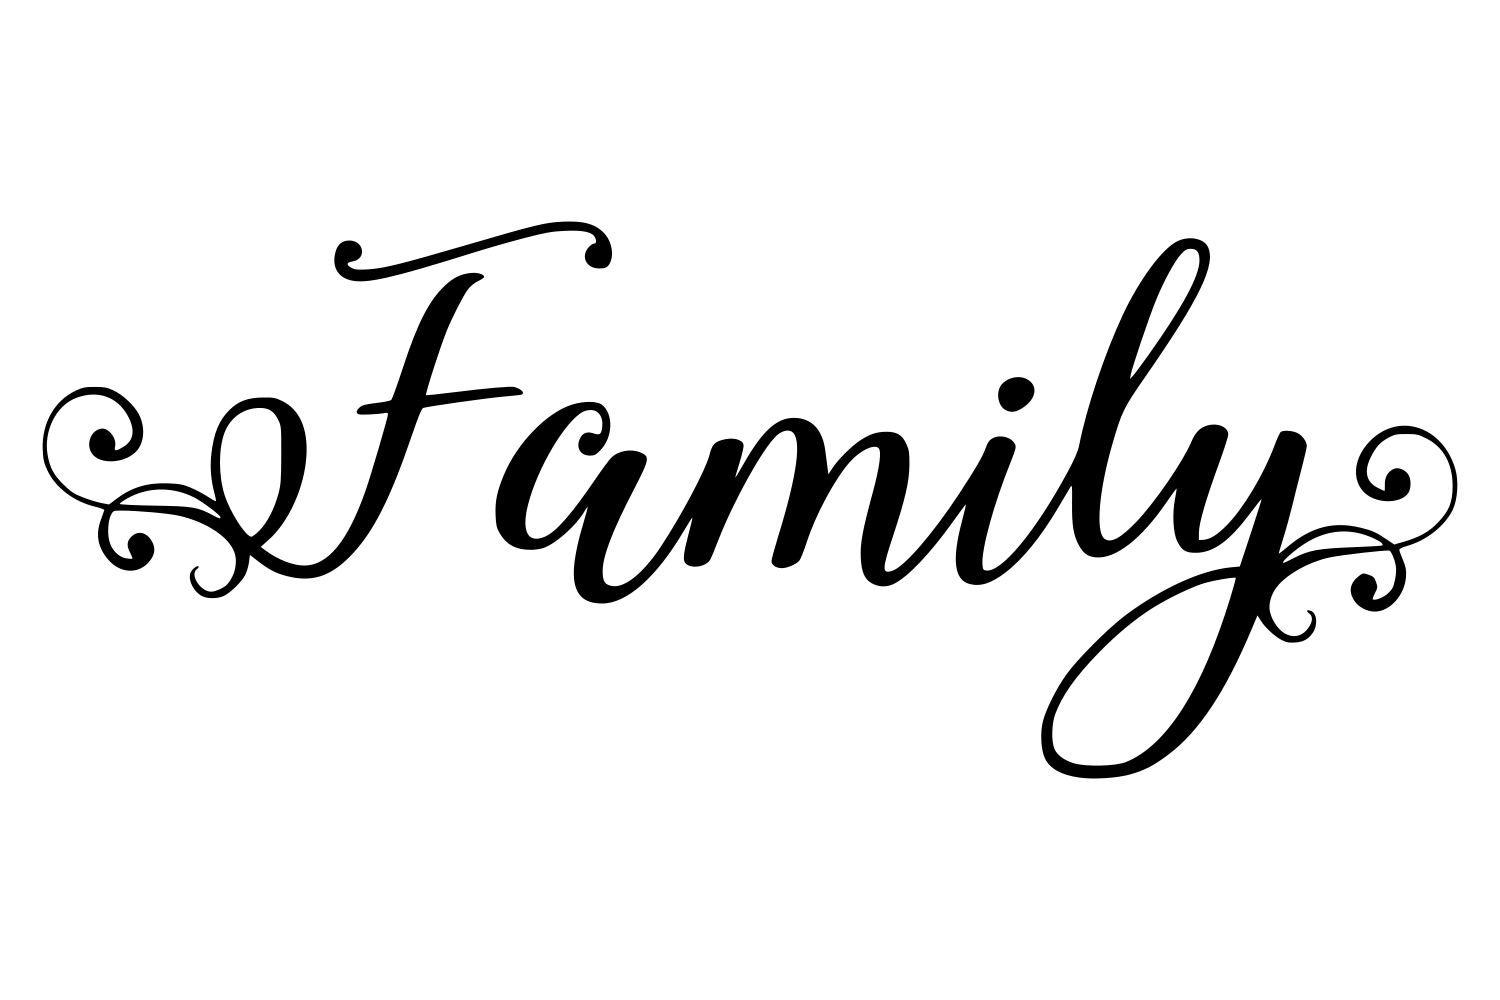 Family SVG